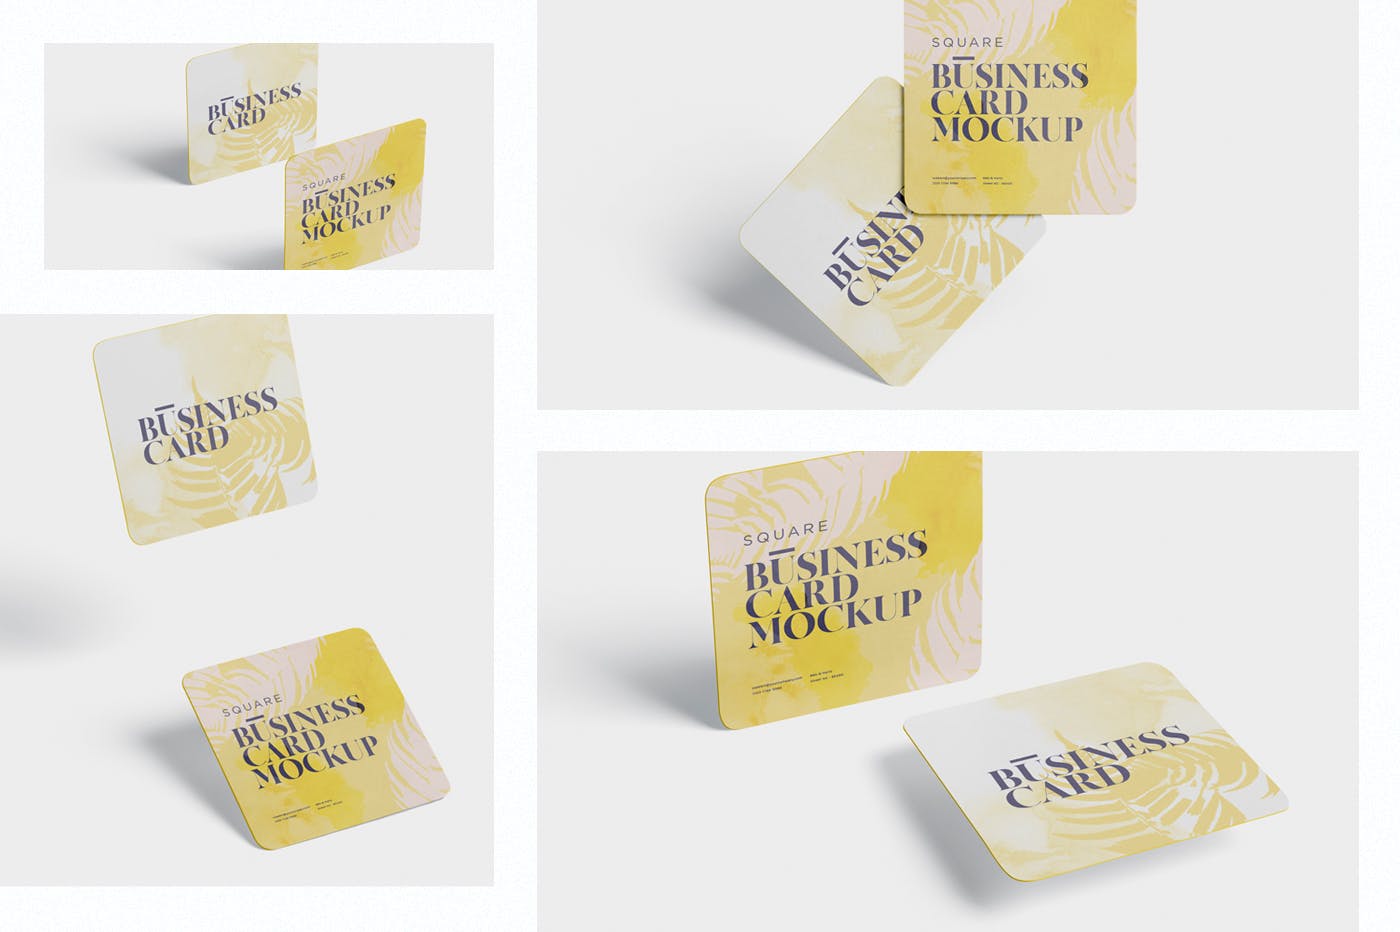 圆角设计风格企业名片效果图素材库精选 Business Card Mockup – Square Round Corner插图(1)